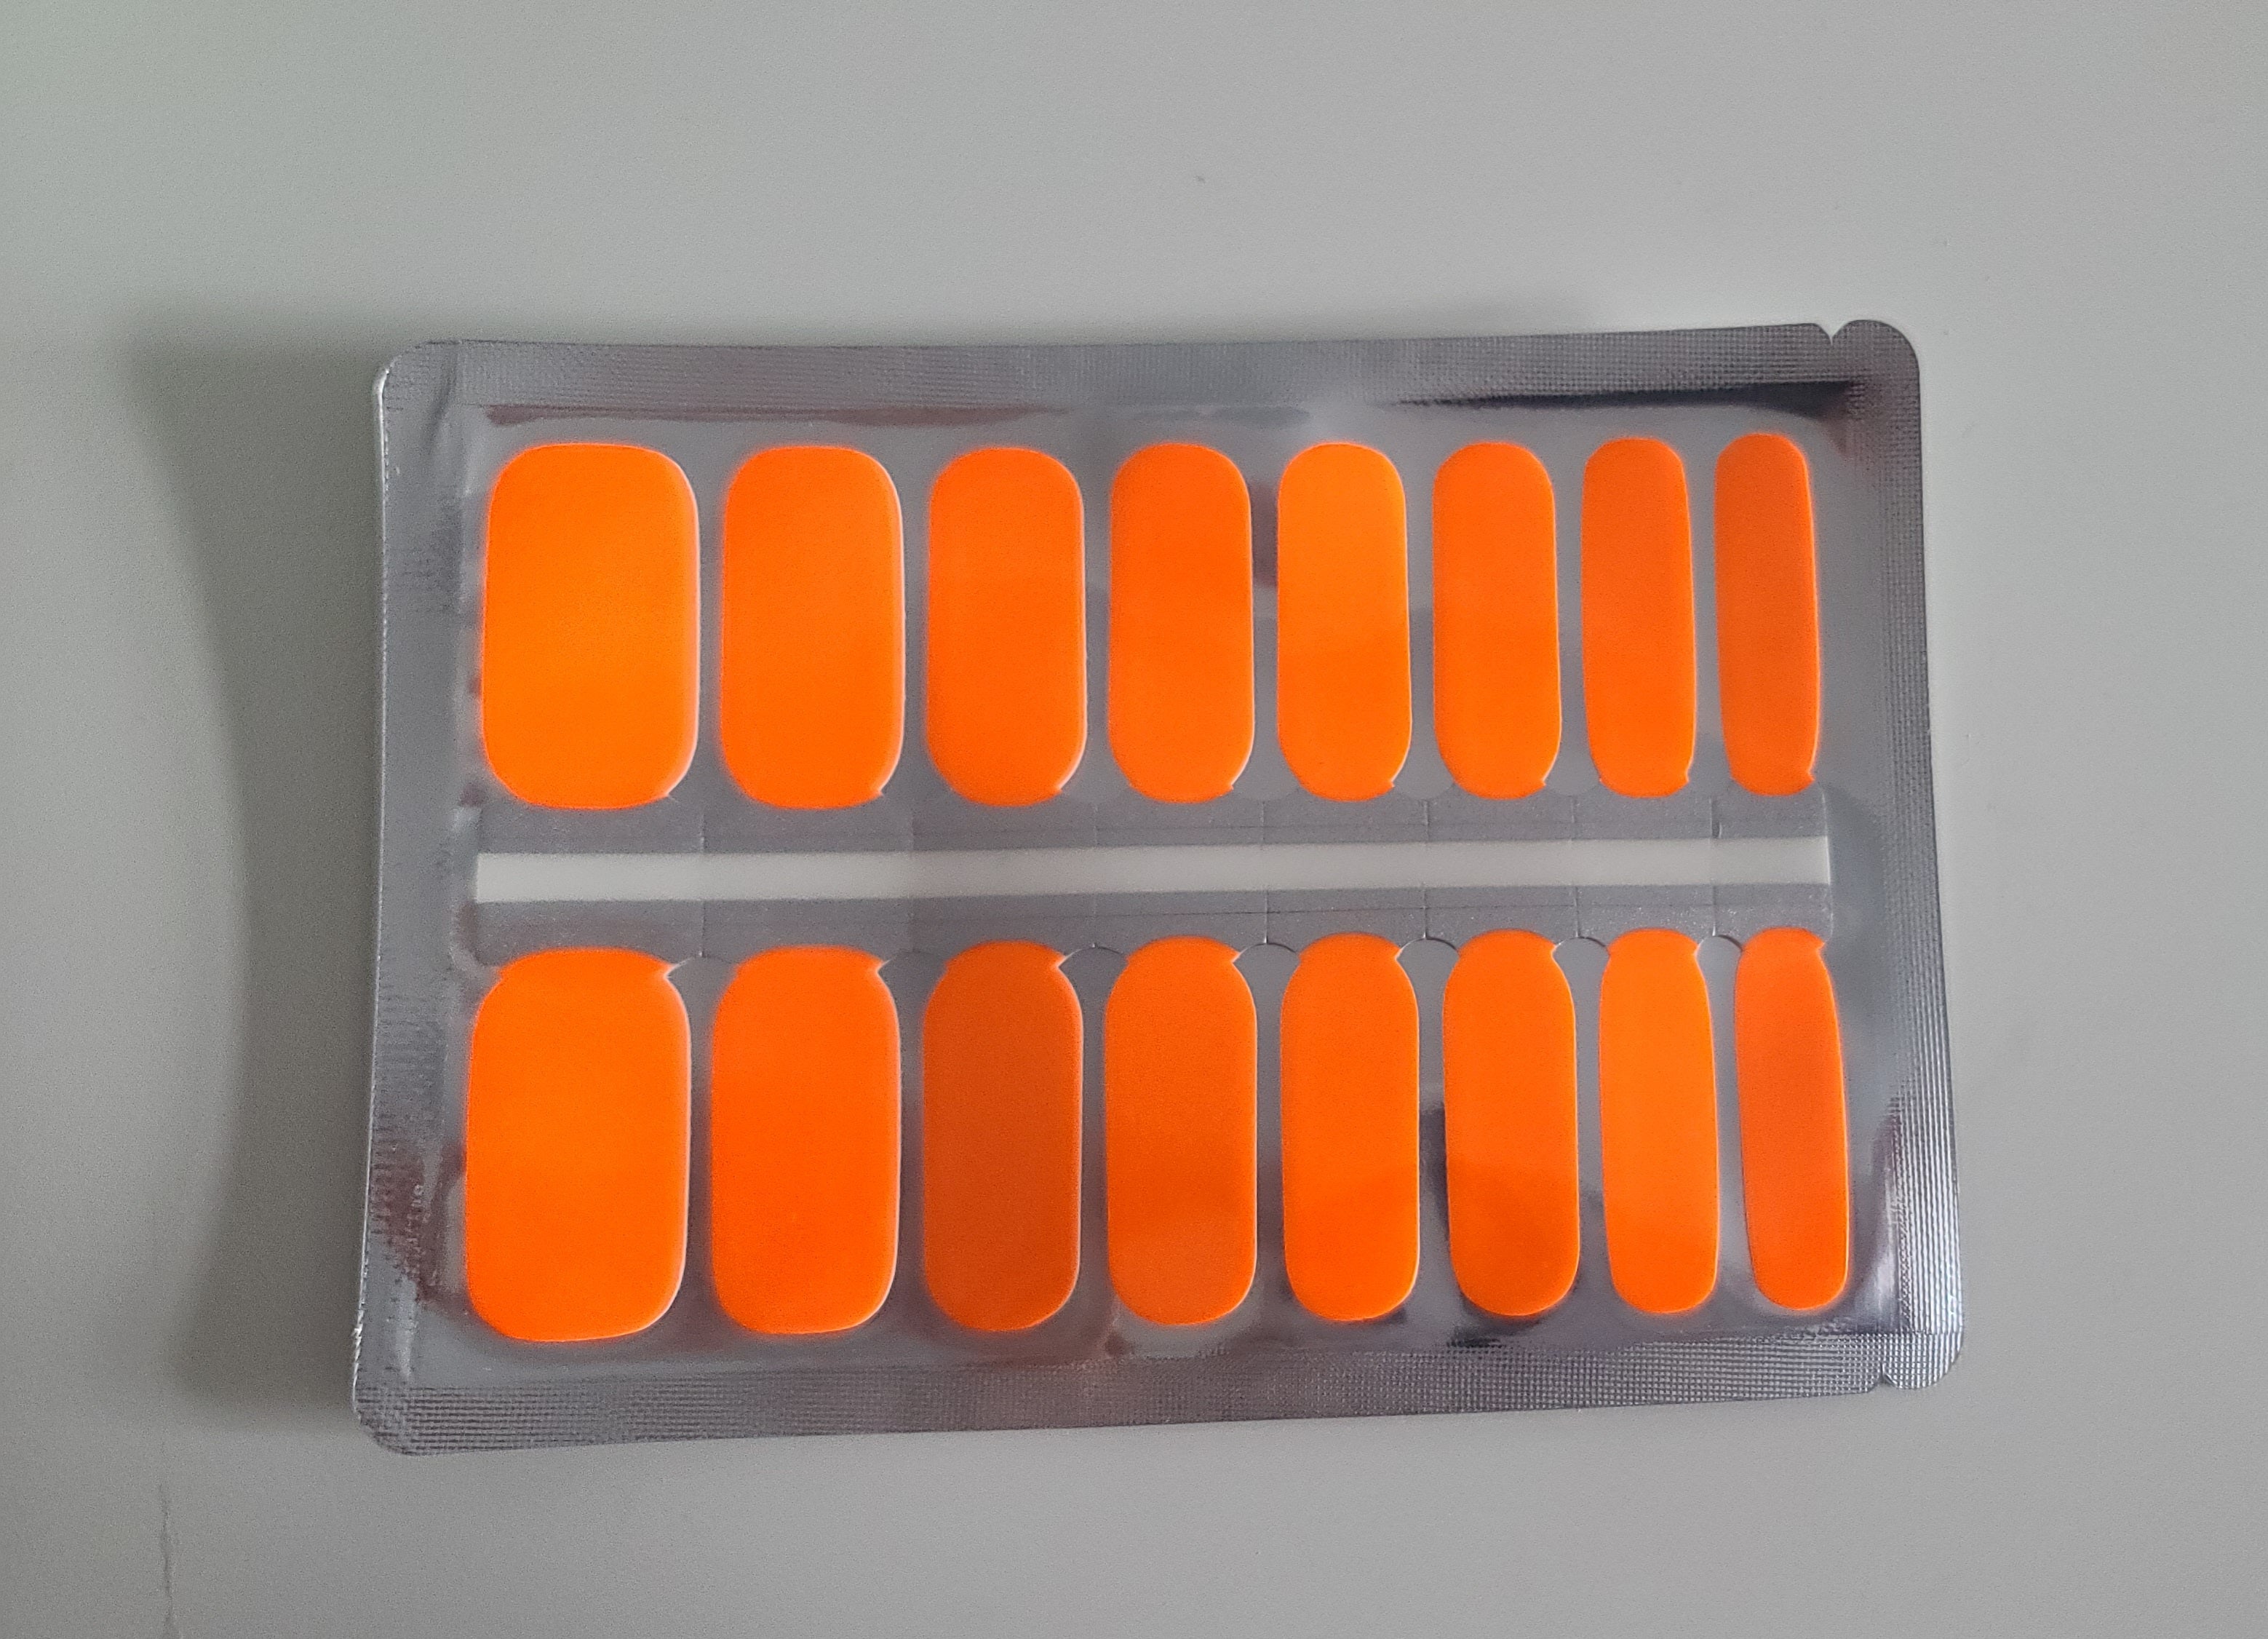 Neon Fluorescent Orange Solid Color – EZ Nails